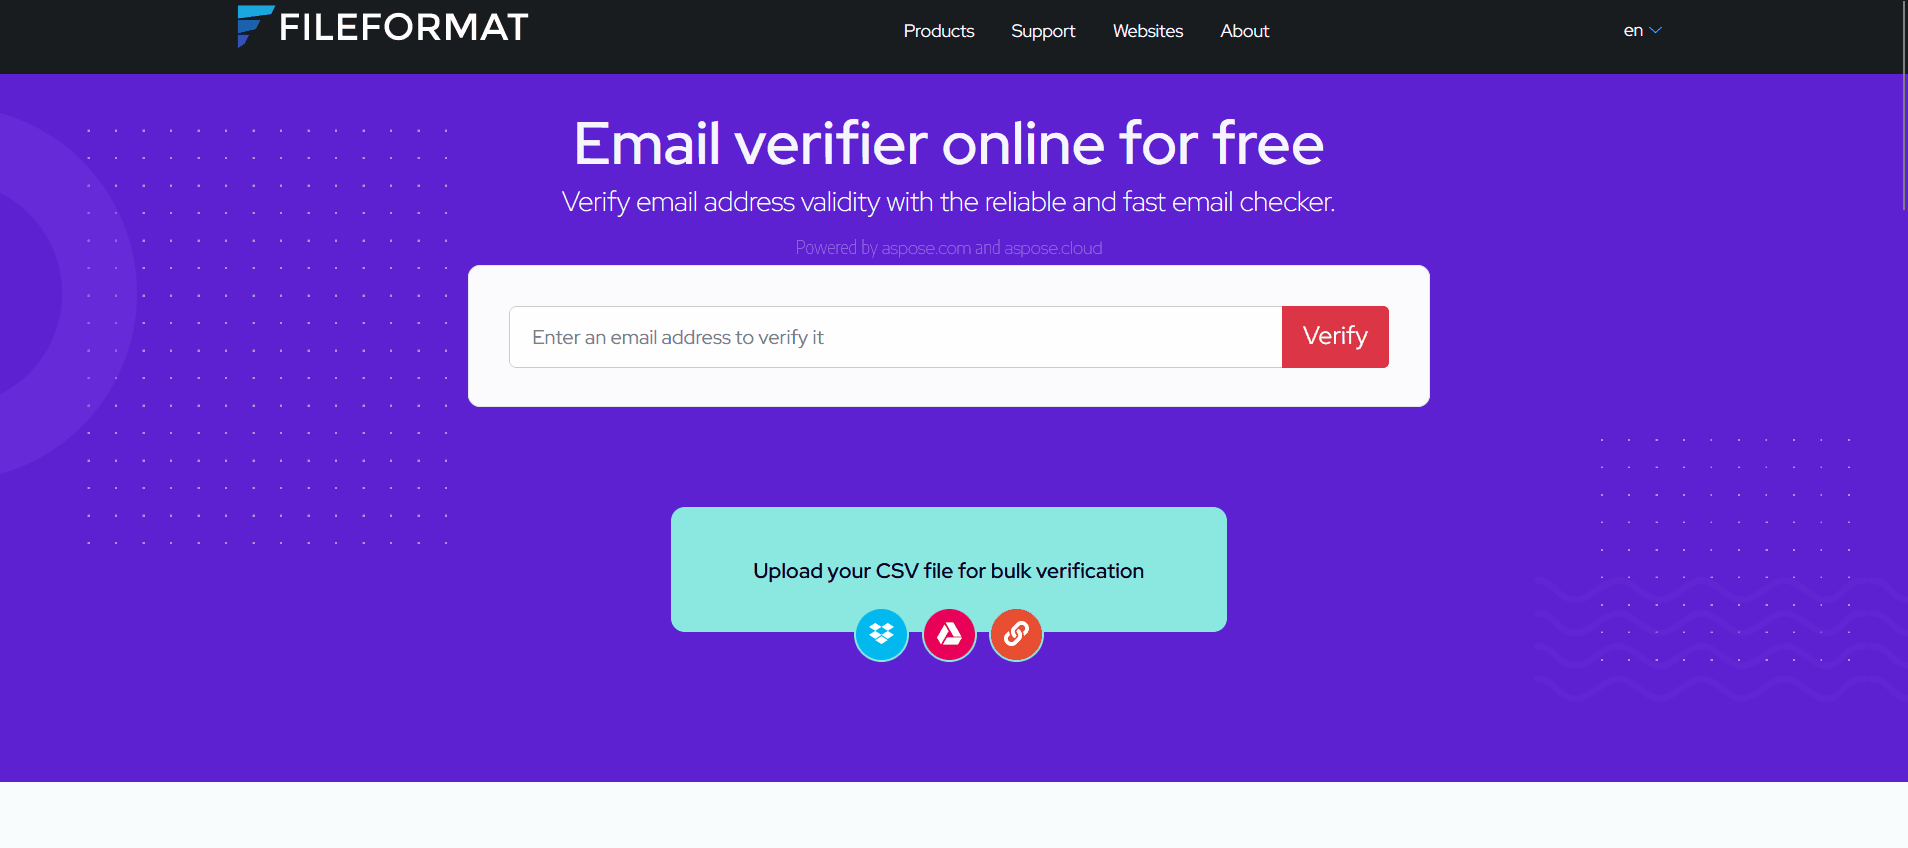 How to verify emails